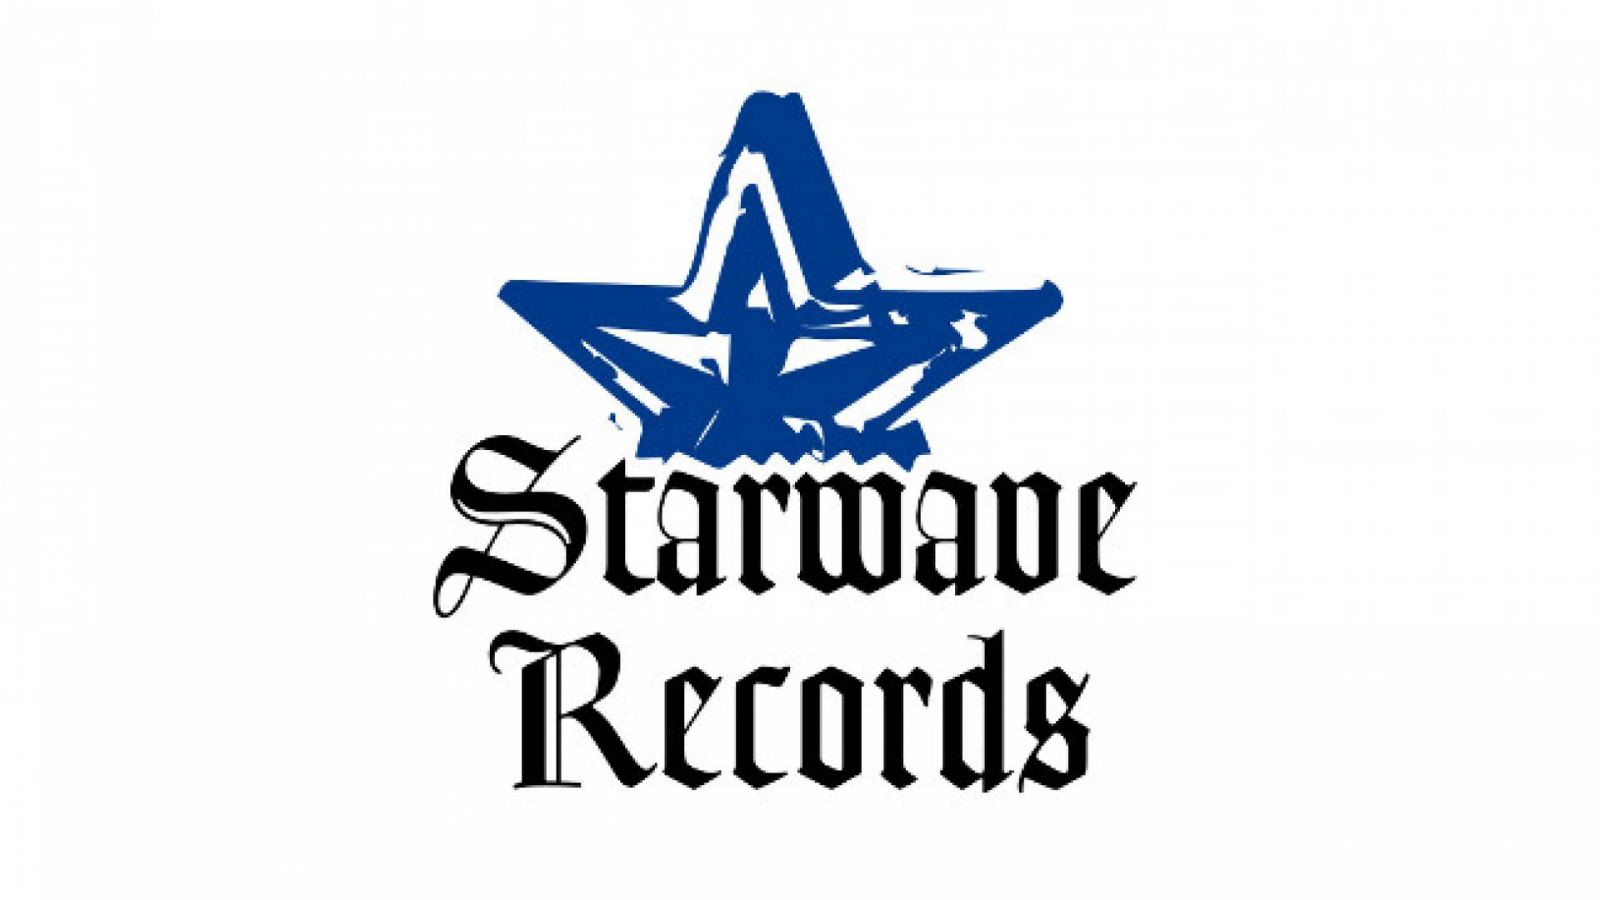 Eine DVD von Starwave Records © Starwave Records